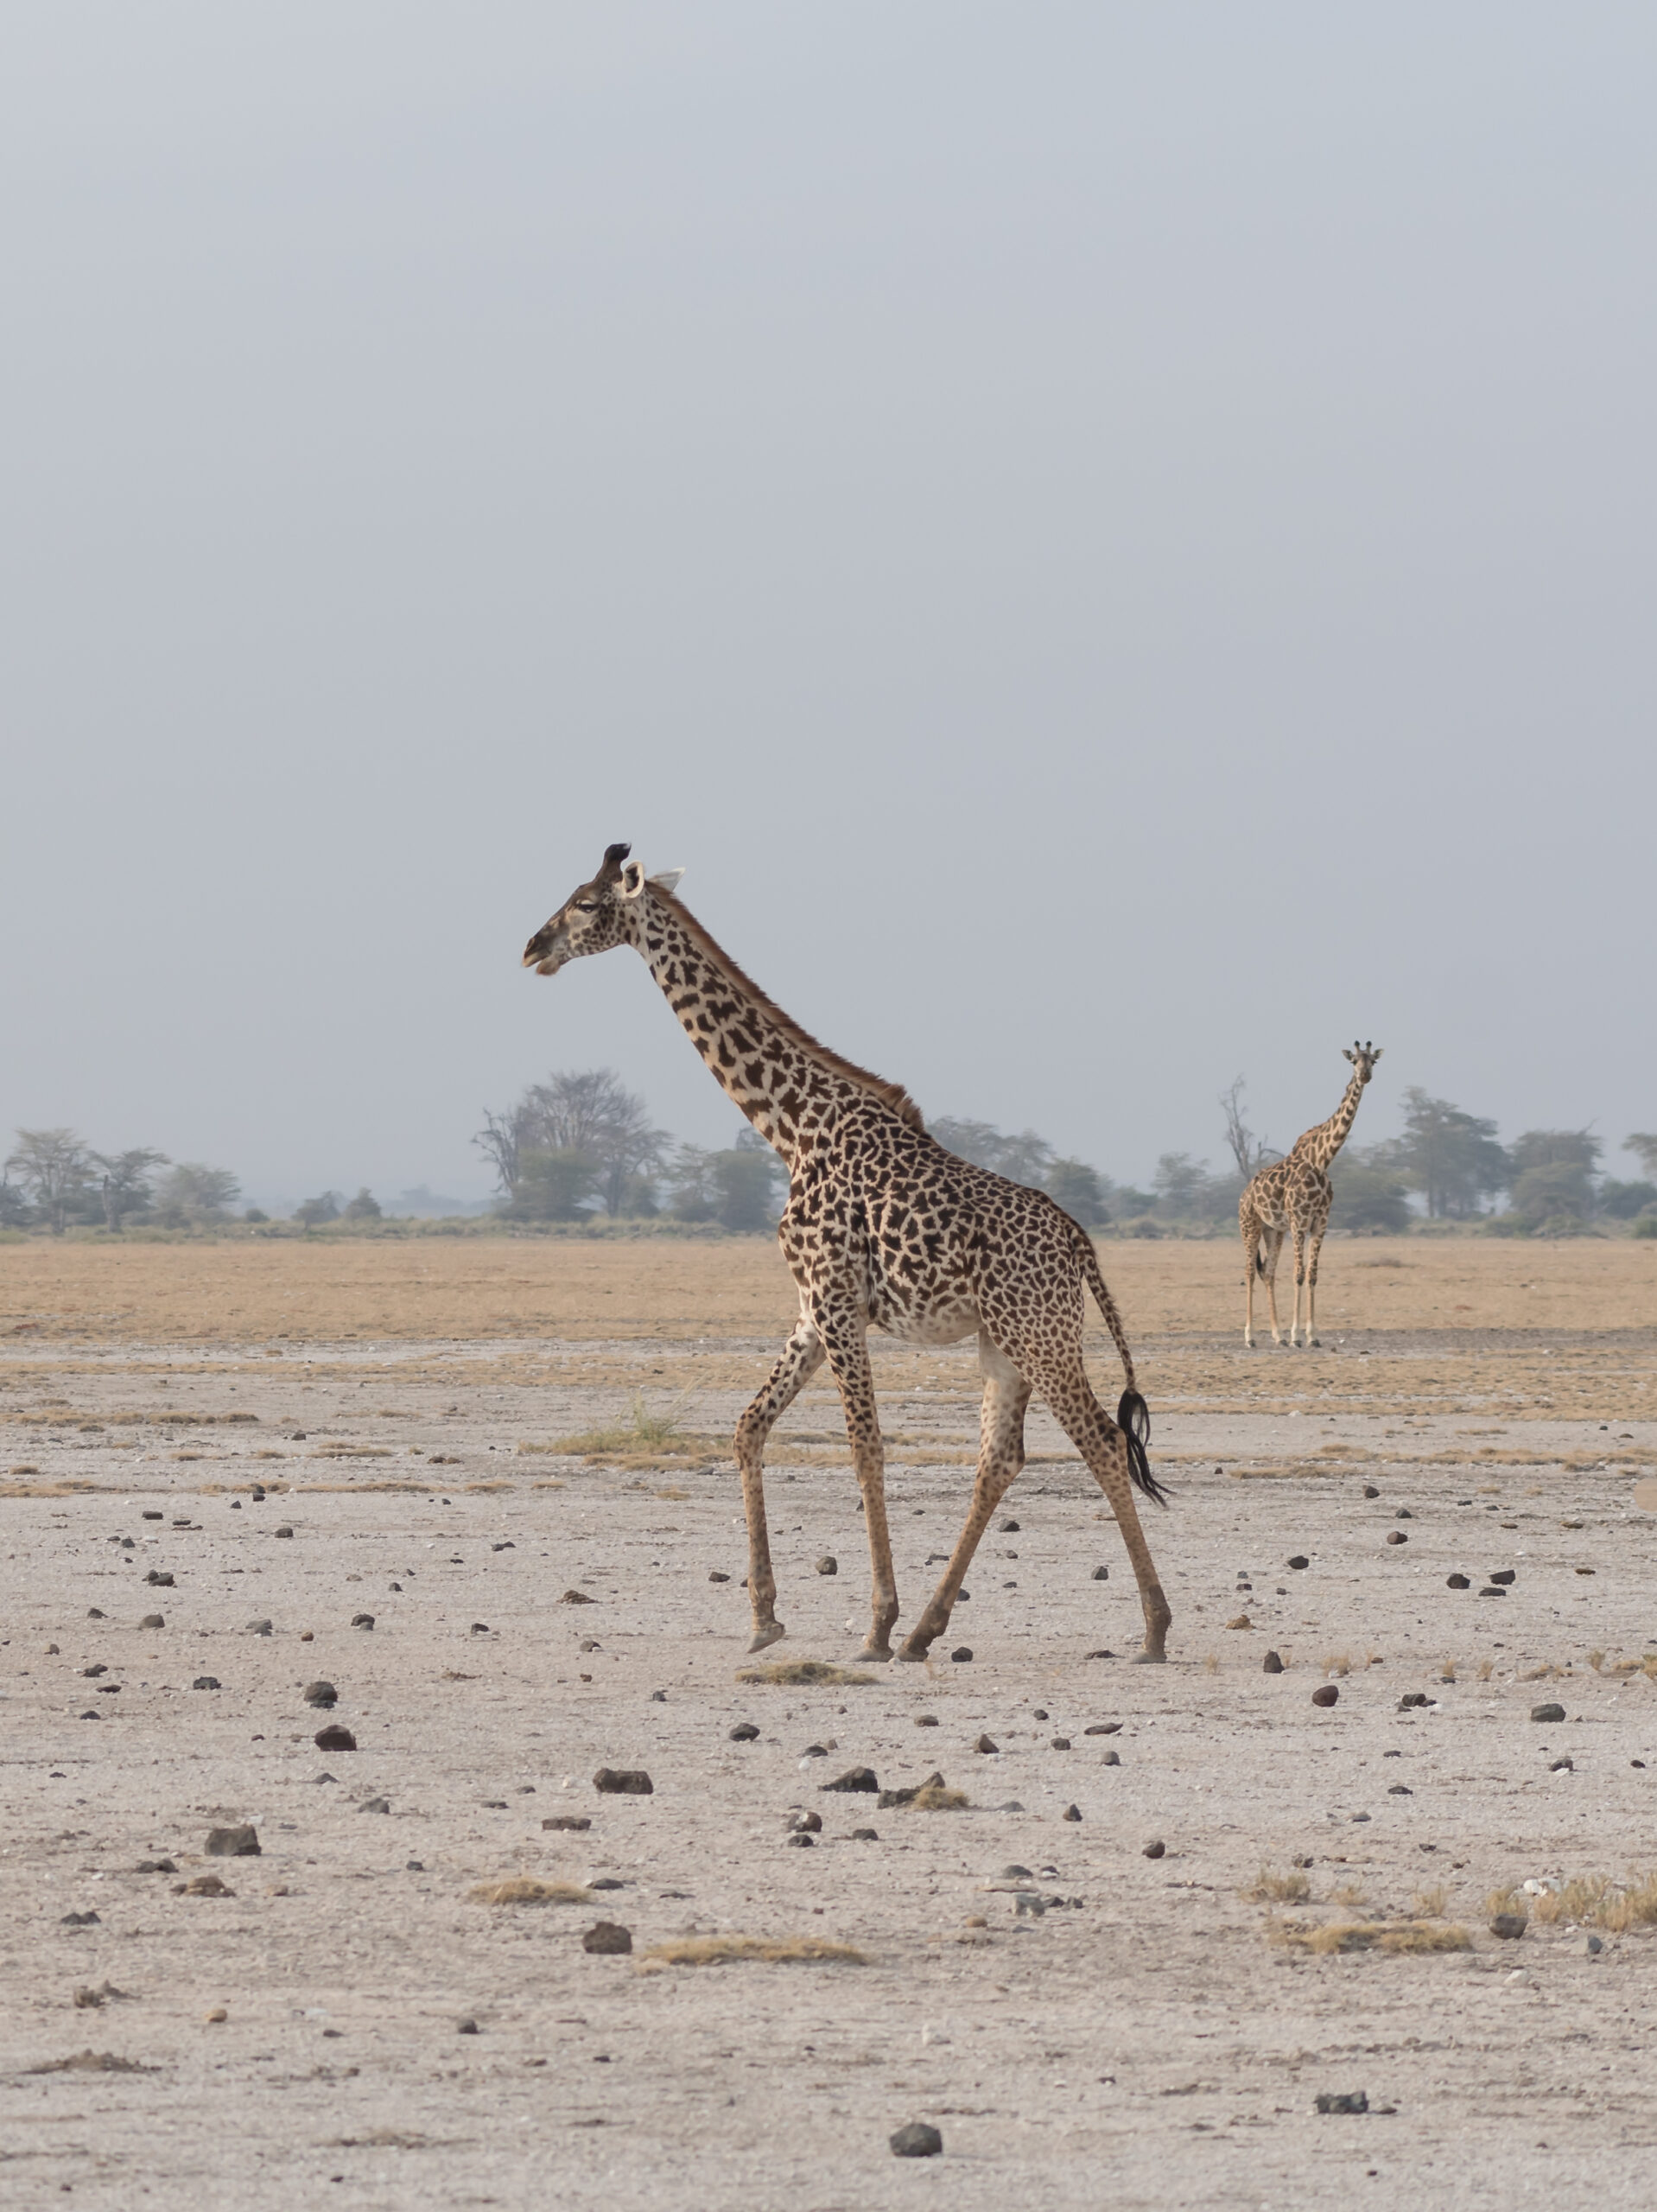 Giraffe walking during dry season